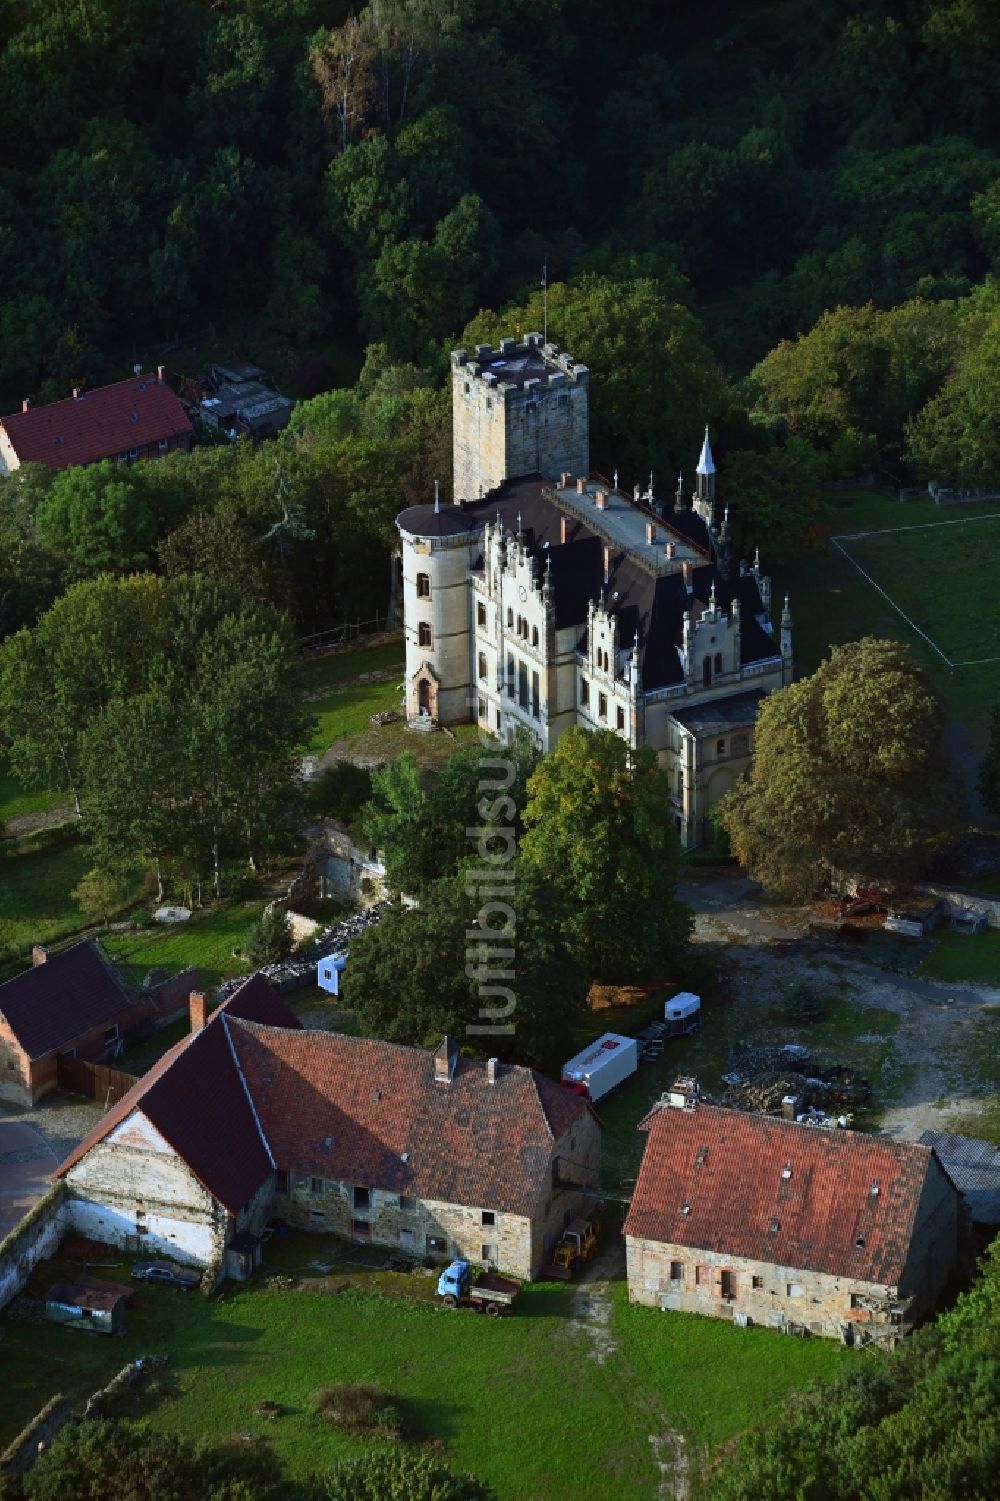 Sommersdorf aus der Vogelperspektive: Burganlage des Schloss am Schloßhof in Sommersdorf im Bundesland Sachsen-Anhalt